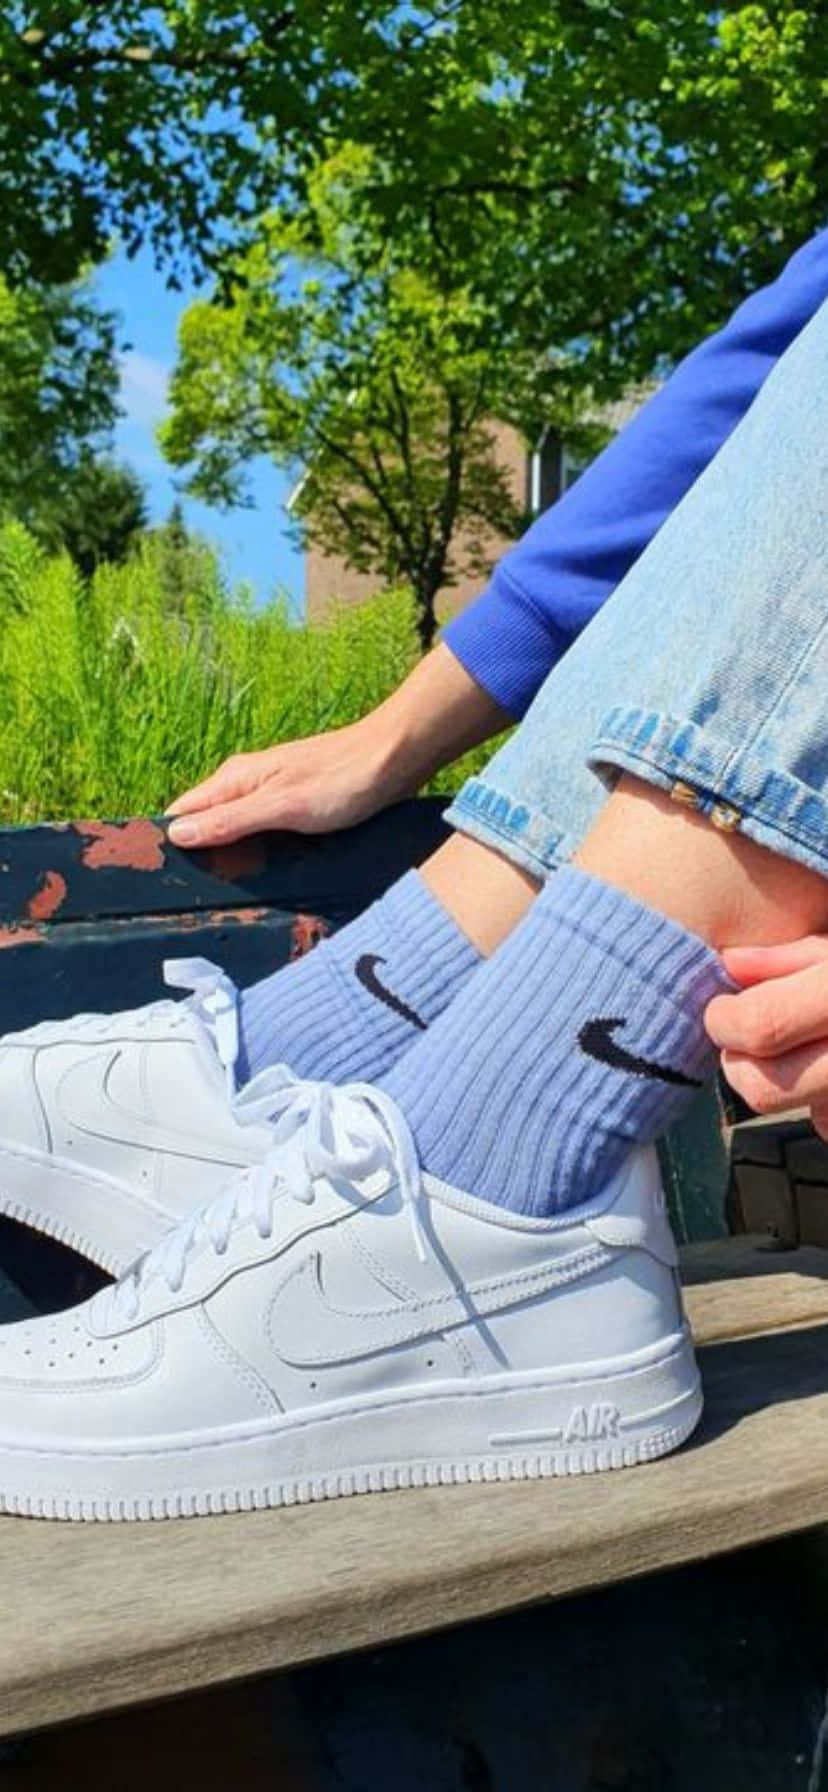 Blue Socks White Sneakers Outdoor Setting Wallpaper